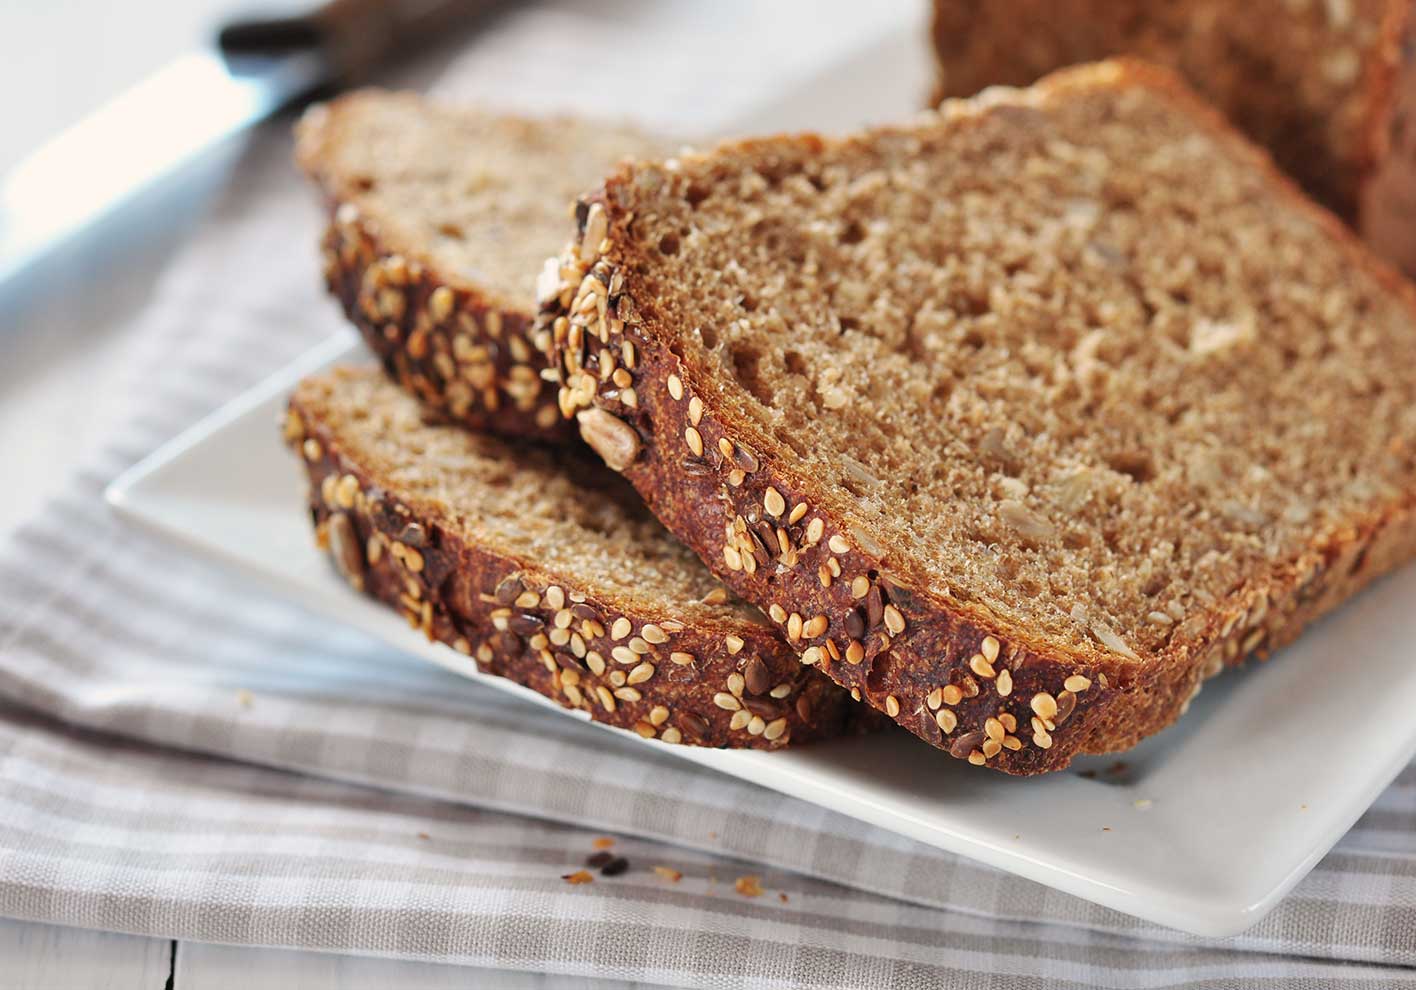 El pan integral está compuesto de harina de trigo no refinada (posee más salvado). Se denomina integral al pan que posee una gran cantidad de fibra dietética. El resultado es…